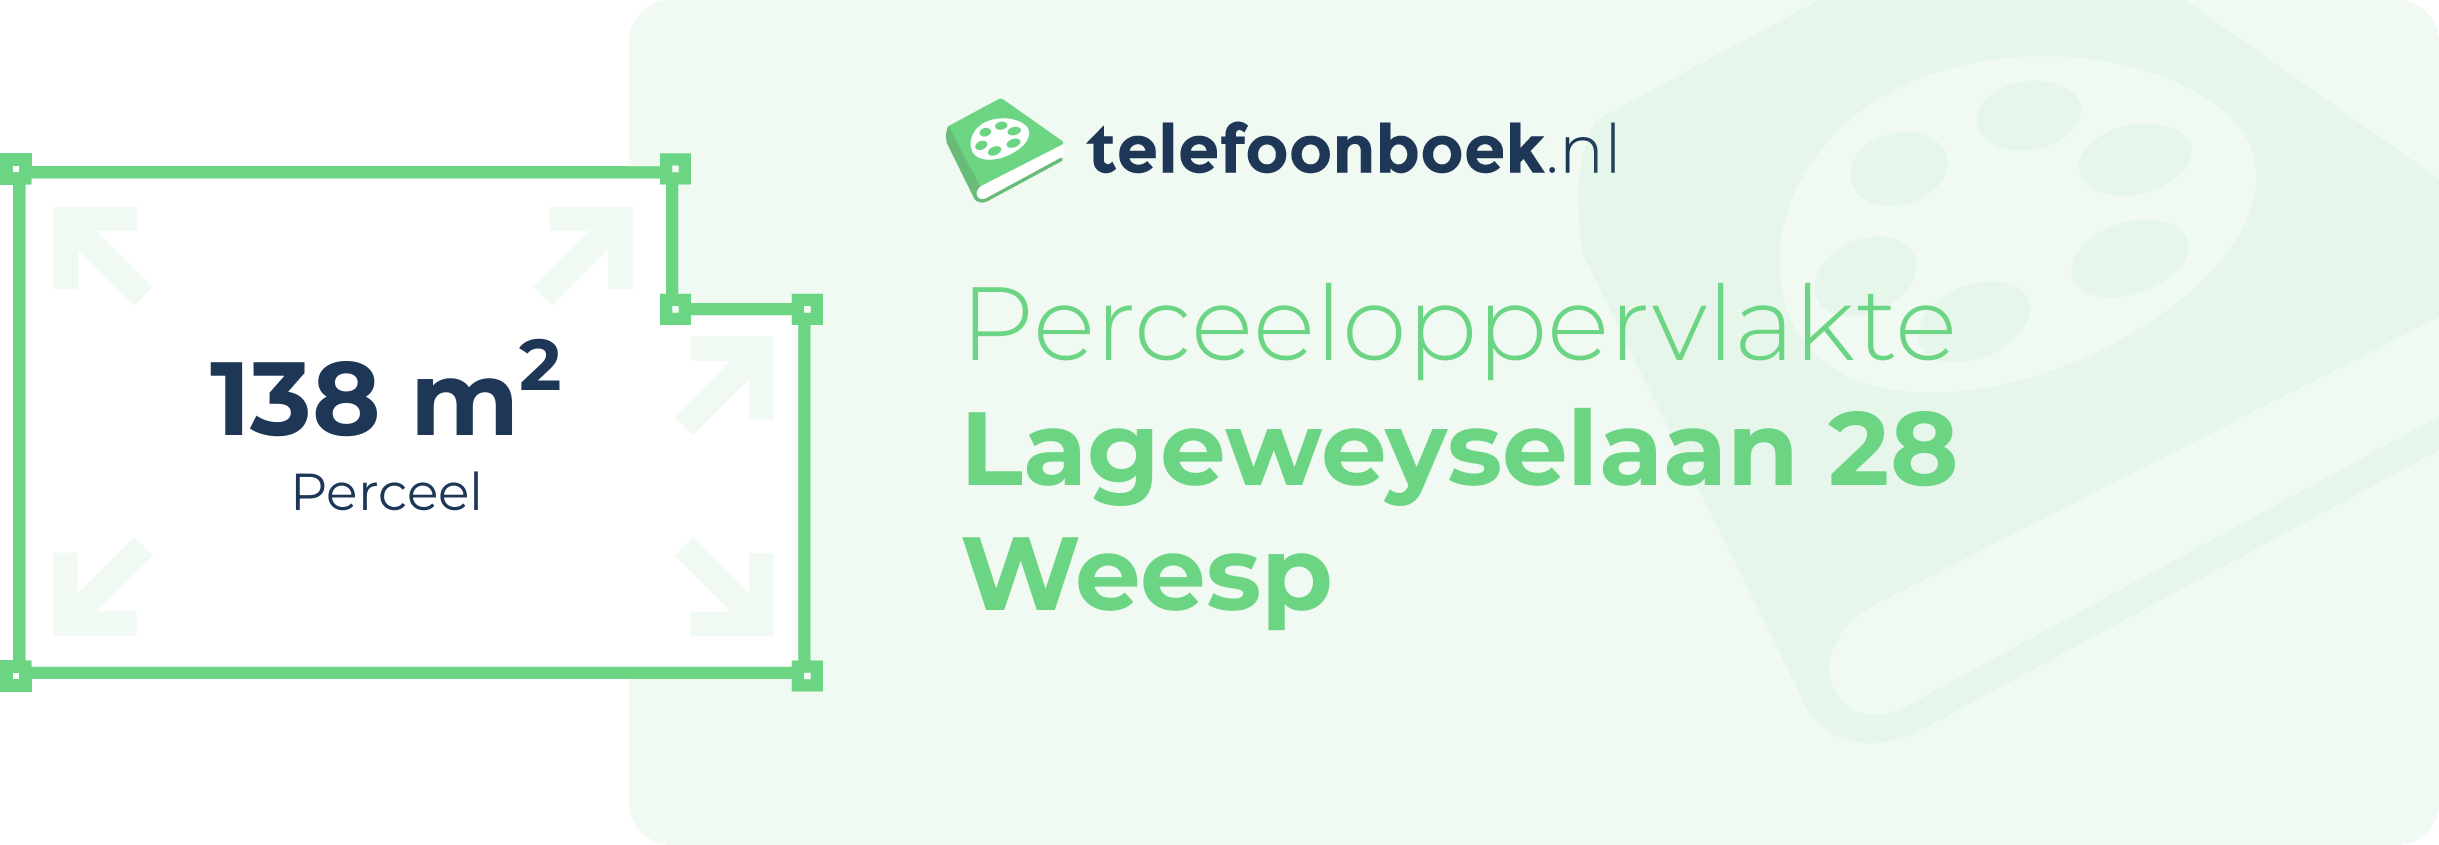 Perceeloppervlakte Lageweyselaan 28 Weesp